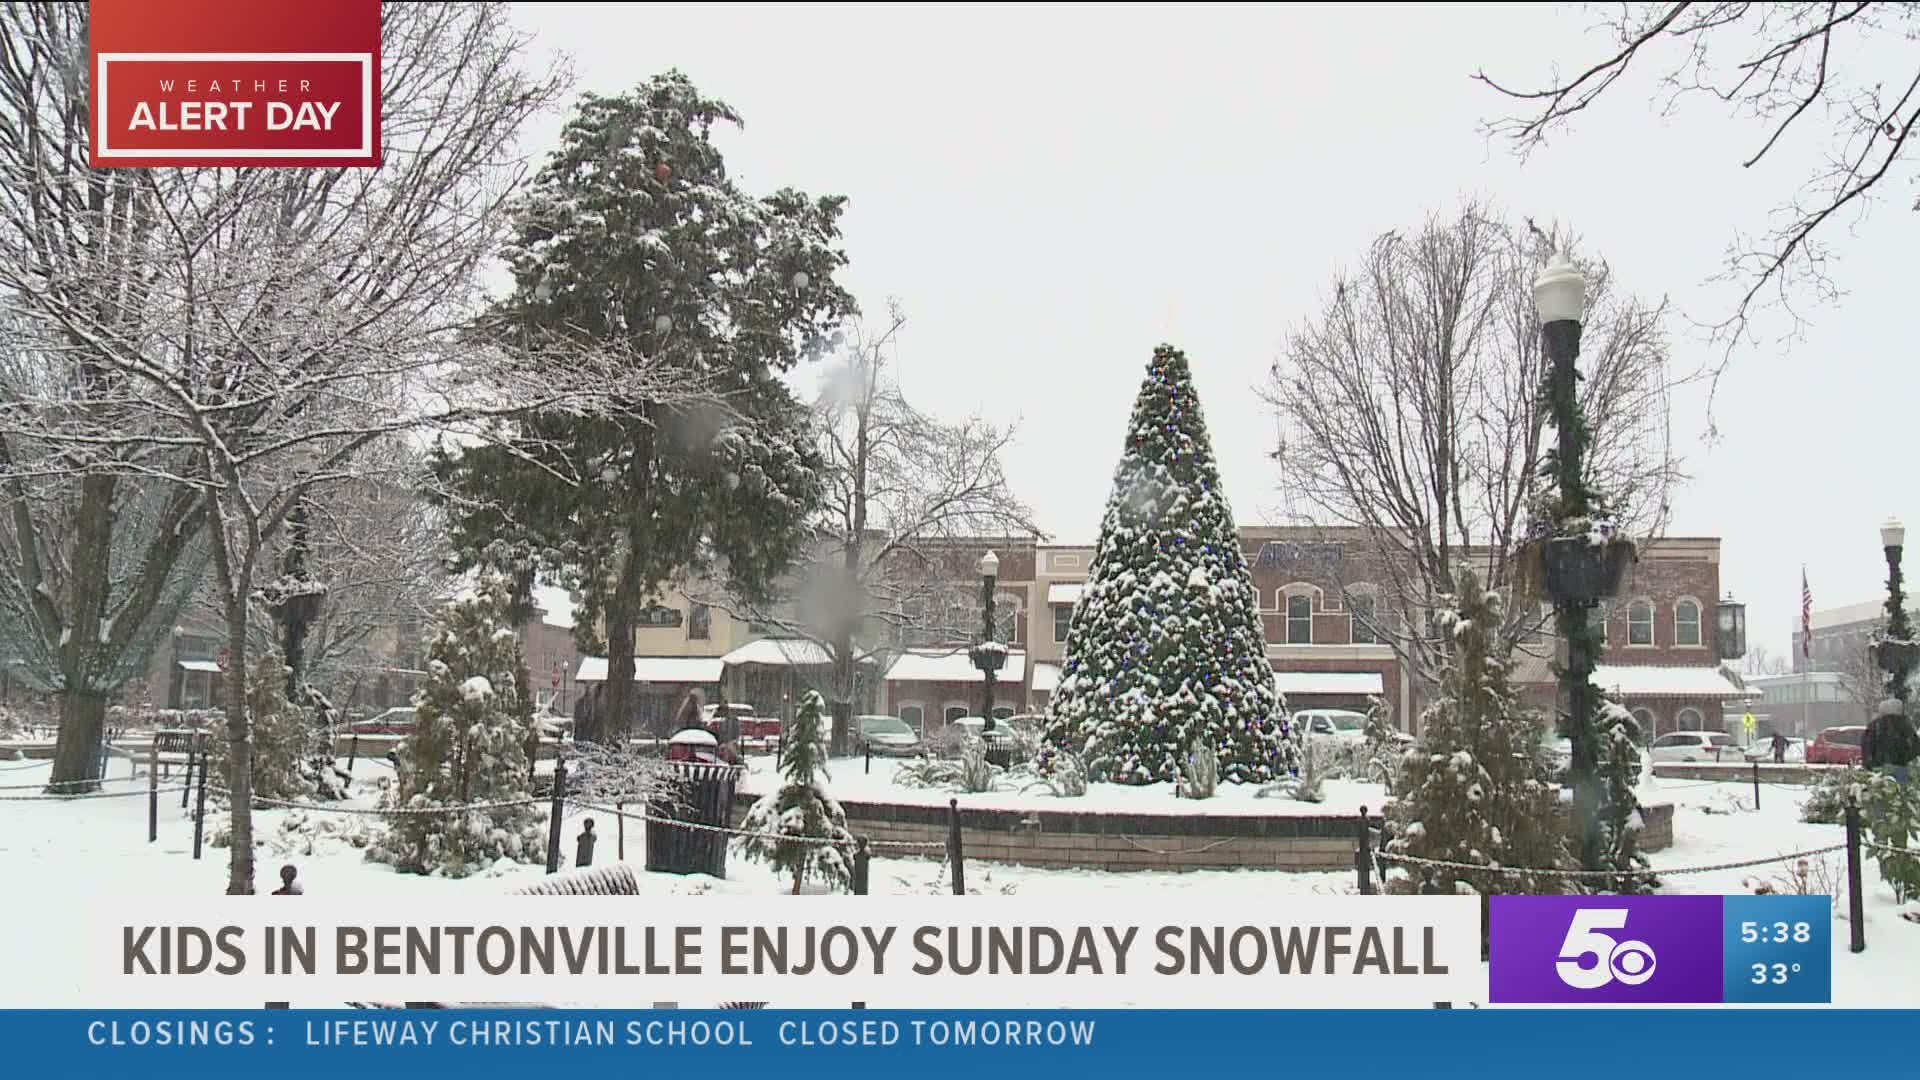 Kids in Bentonville enjoy Sunday snowfall at Bell Park.